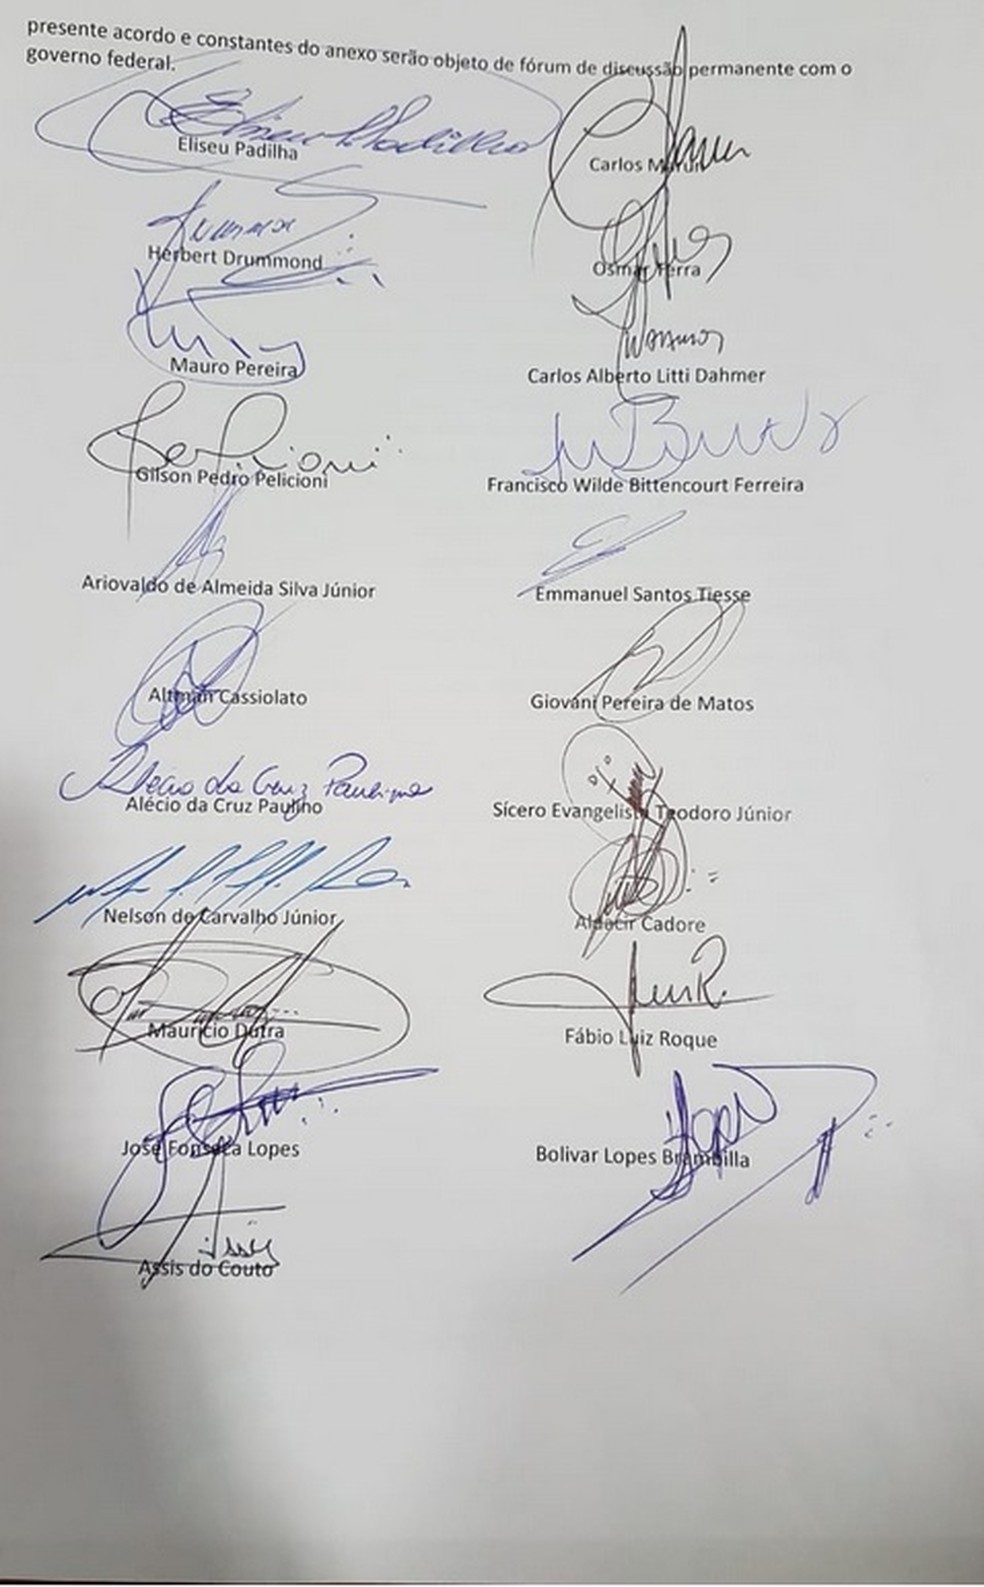 Assinaturas na ata da reuniÃ£o entre governo e caminhoneiros (Foto: ReproduÃ§Ã£o)